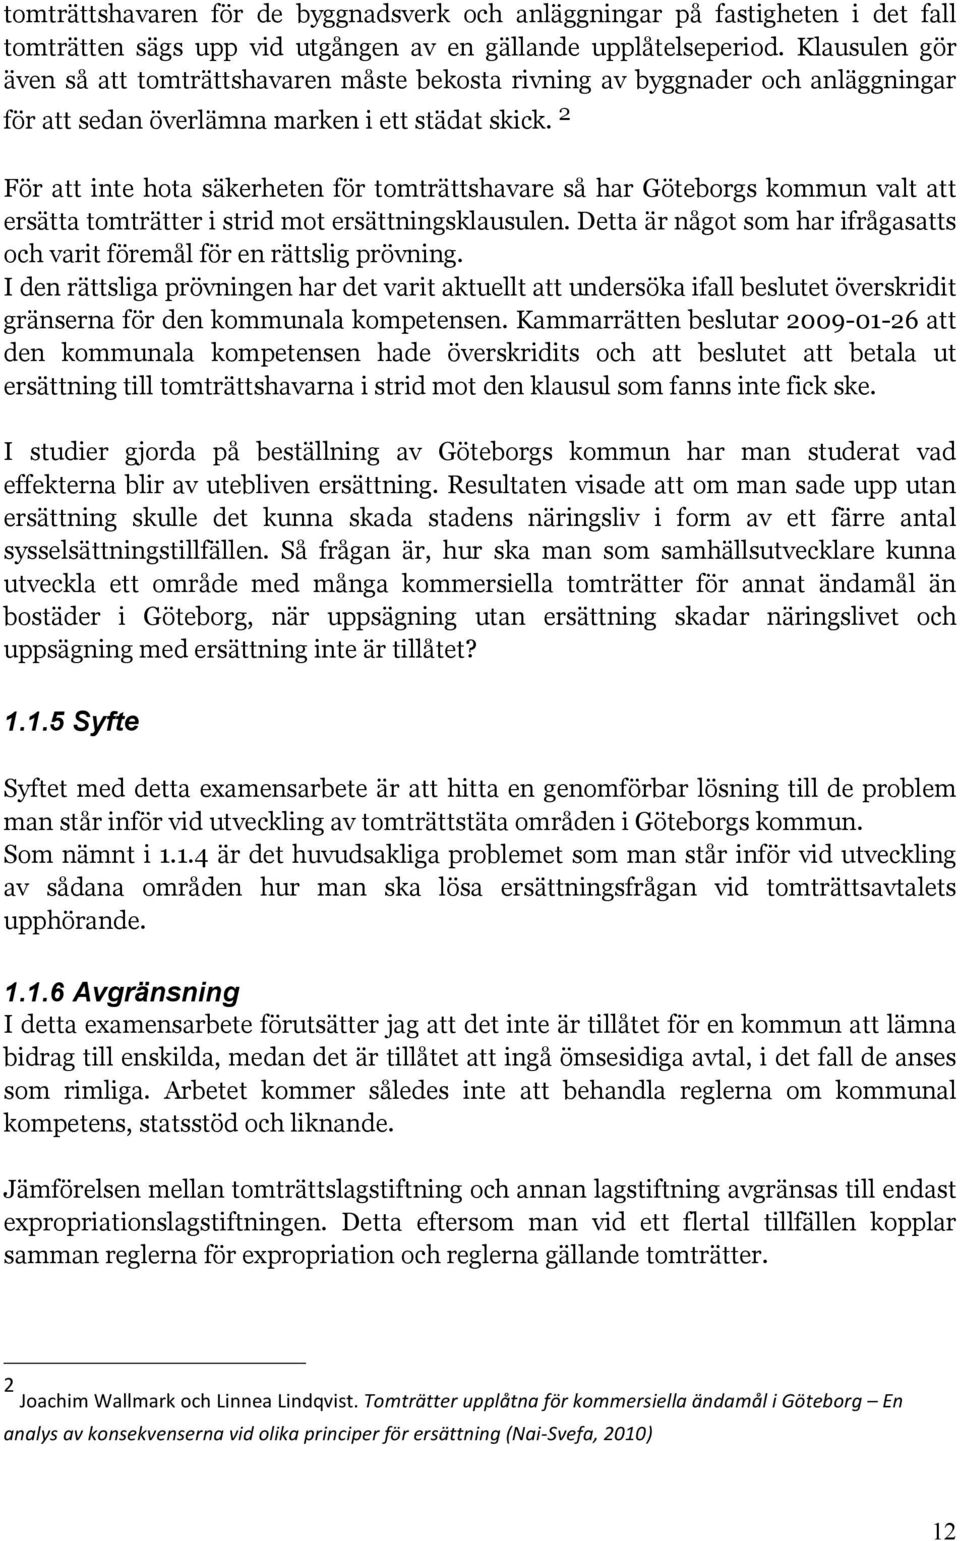 2 För att inte hota säkerheten för tomträttshavare så har Göteborgs kommun valt att ersätta tomträtter i strid mot ersättningsklausulen.